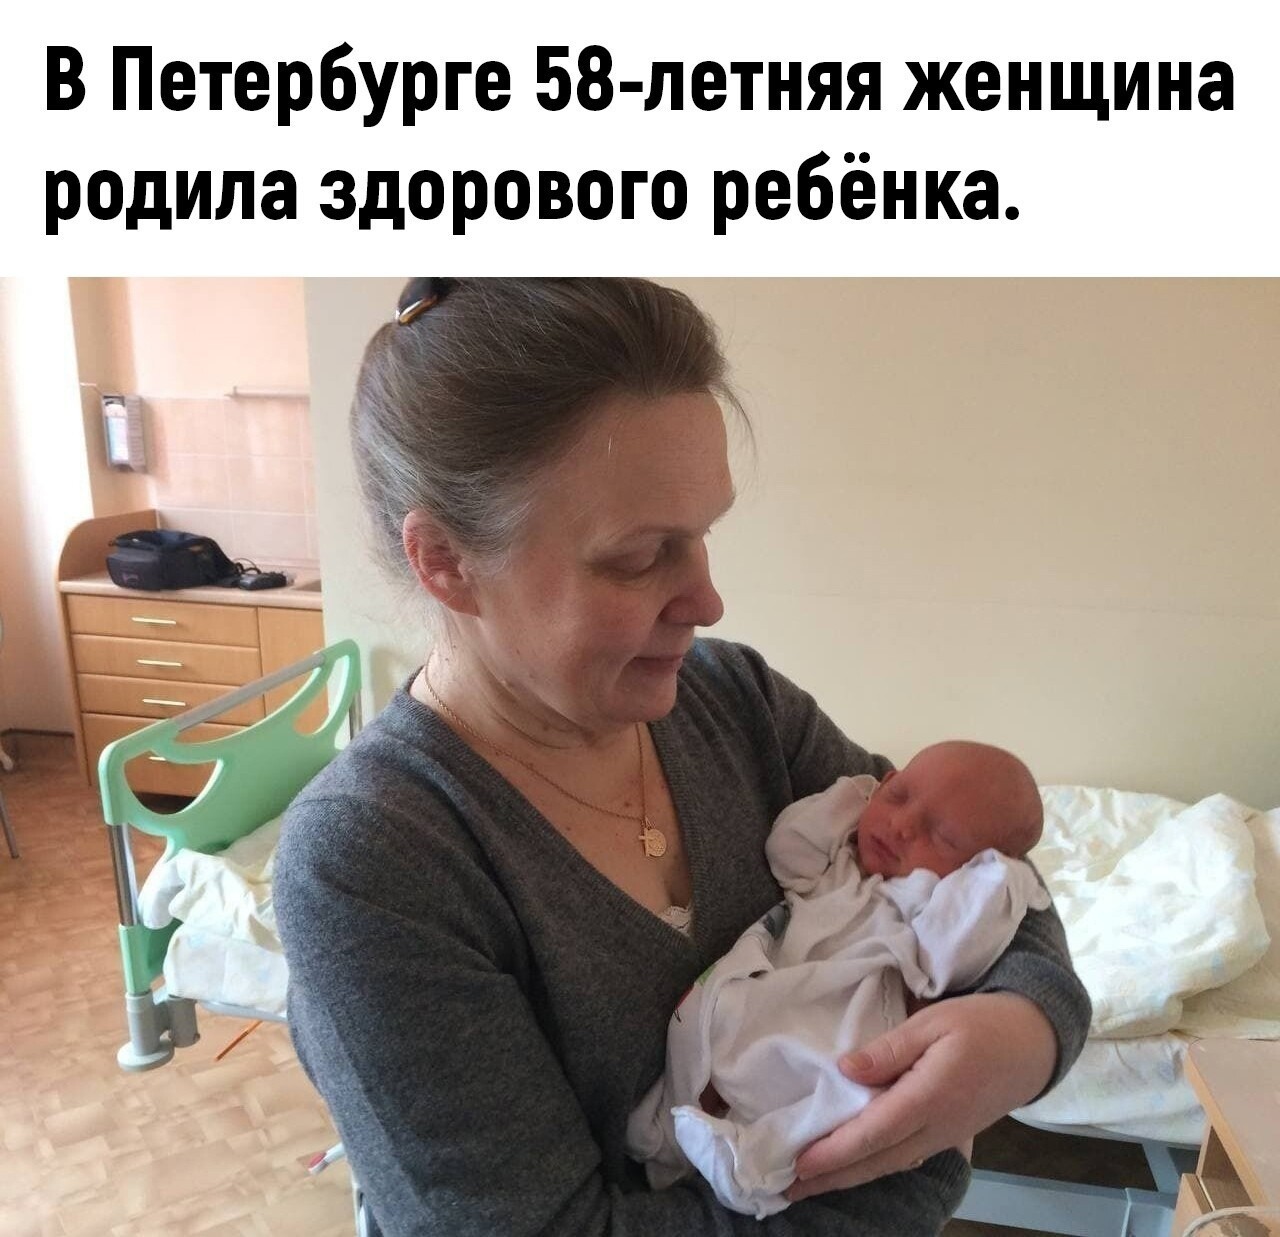 Мария Кононова родила в 58 лет